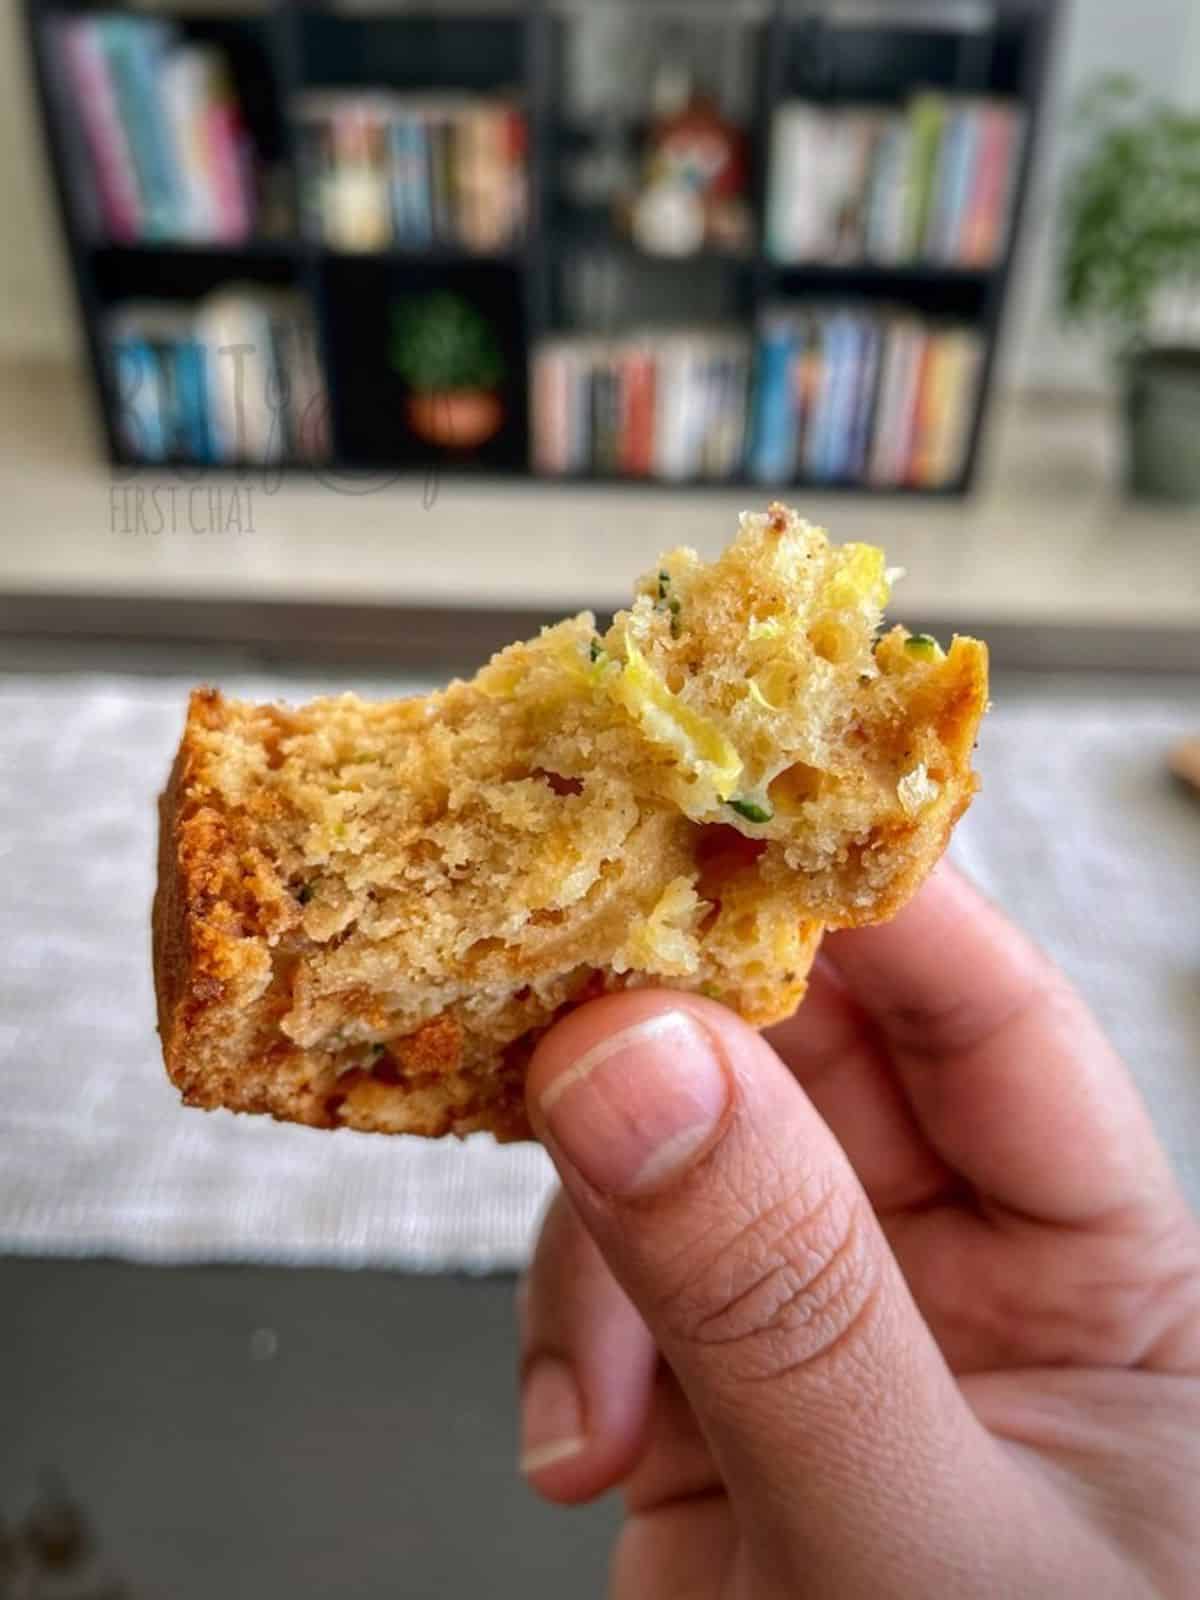 A small piece of half bitten zucchini bread slice in hand.